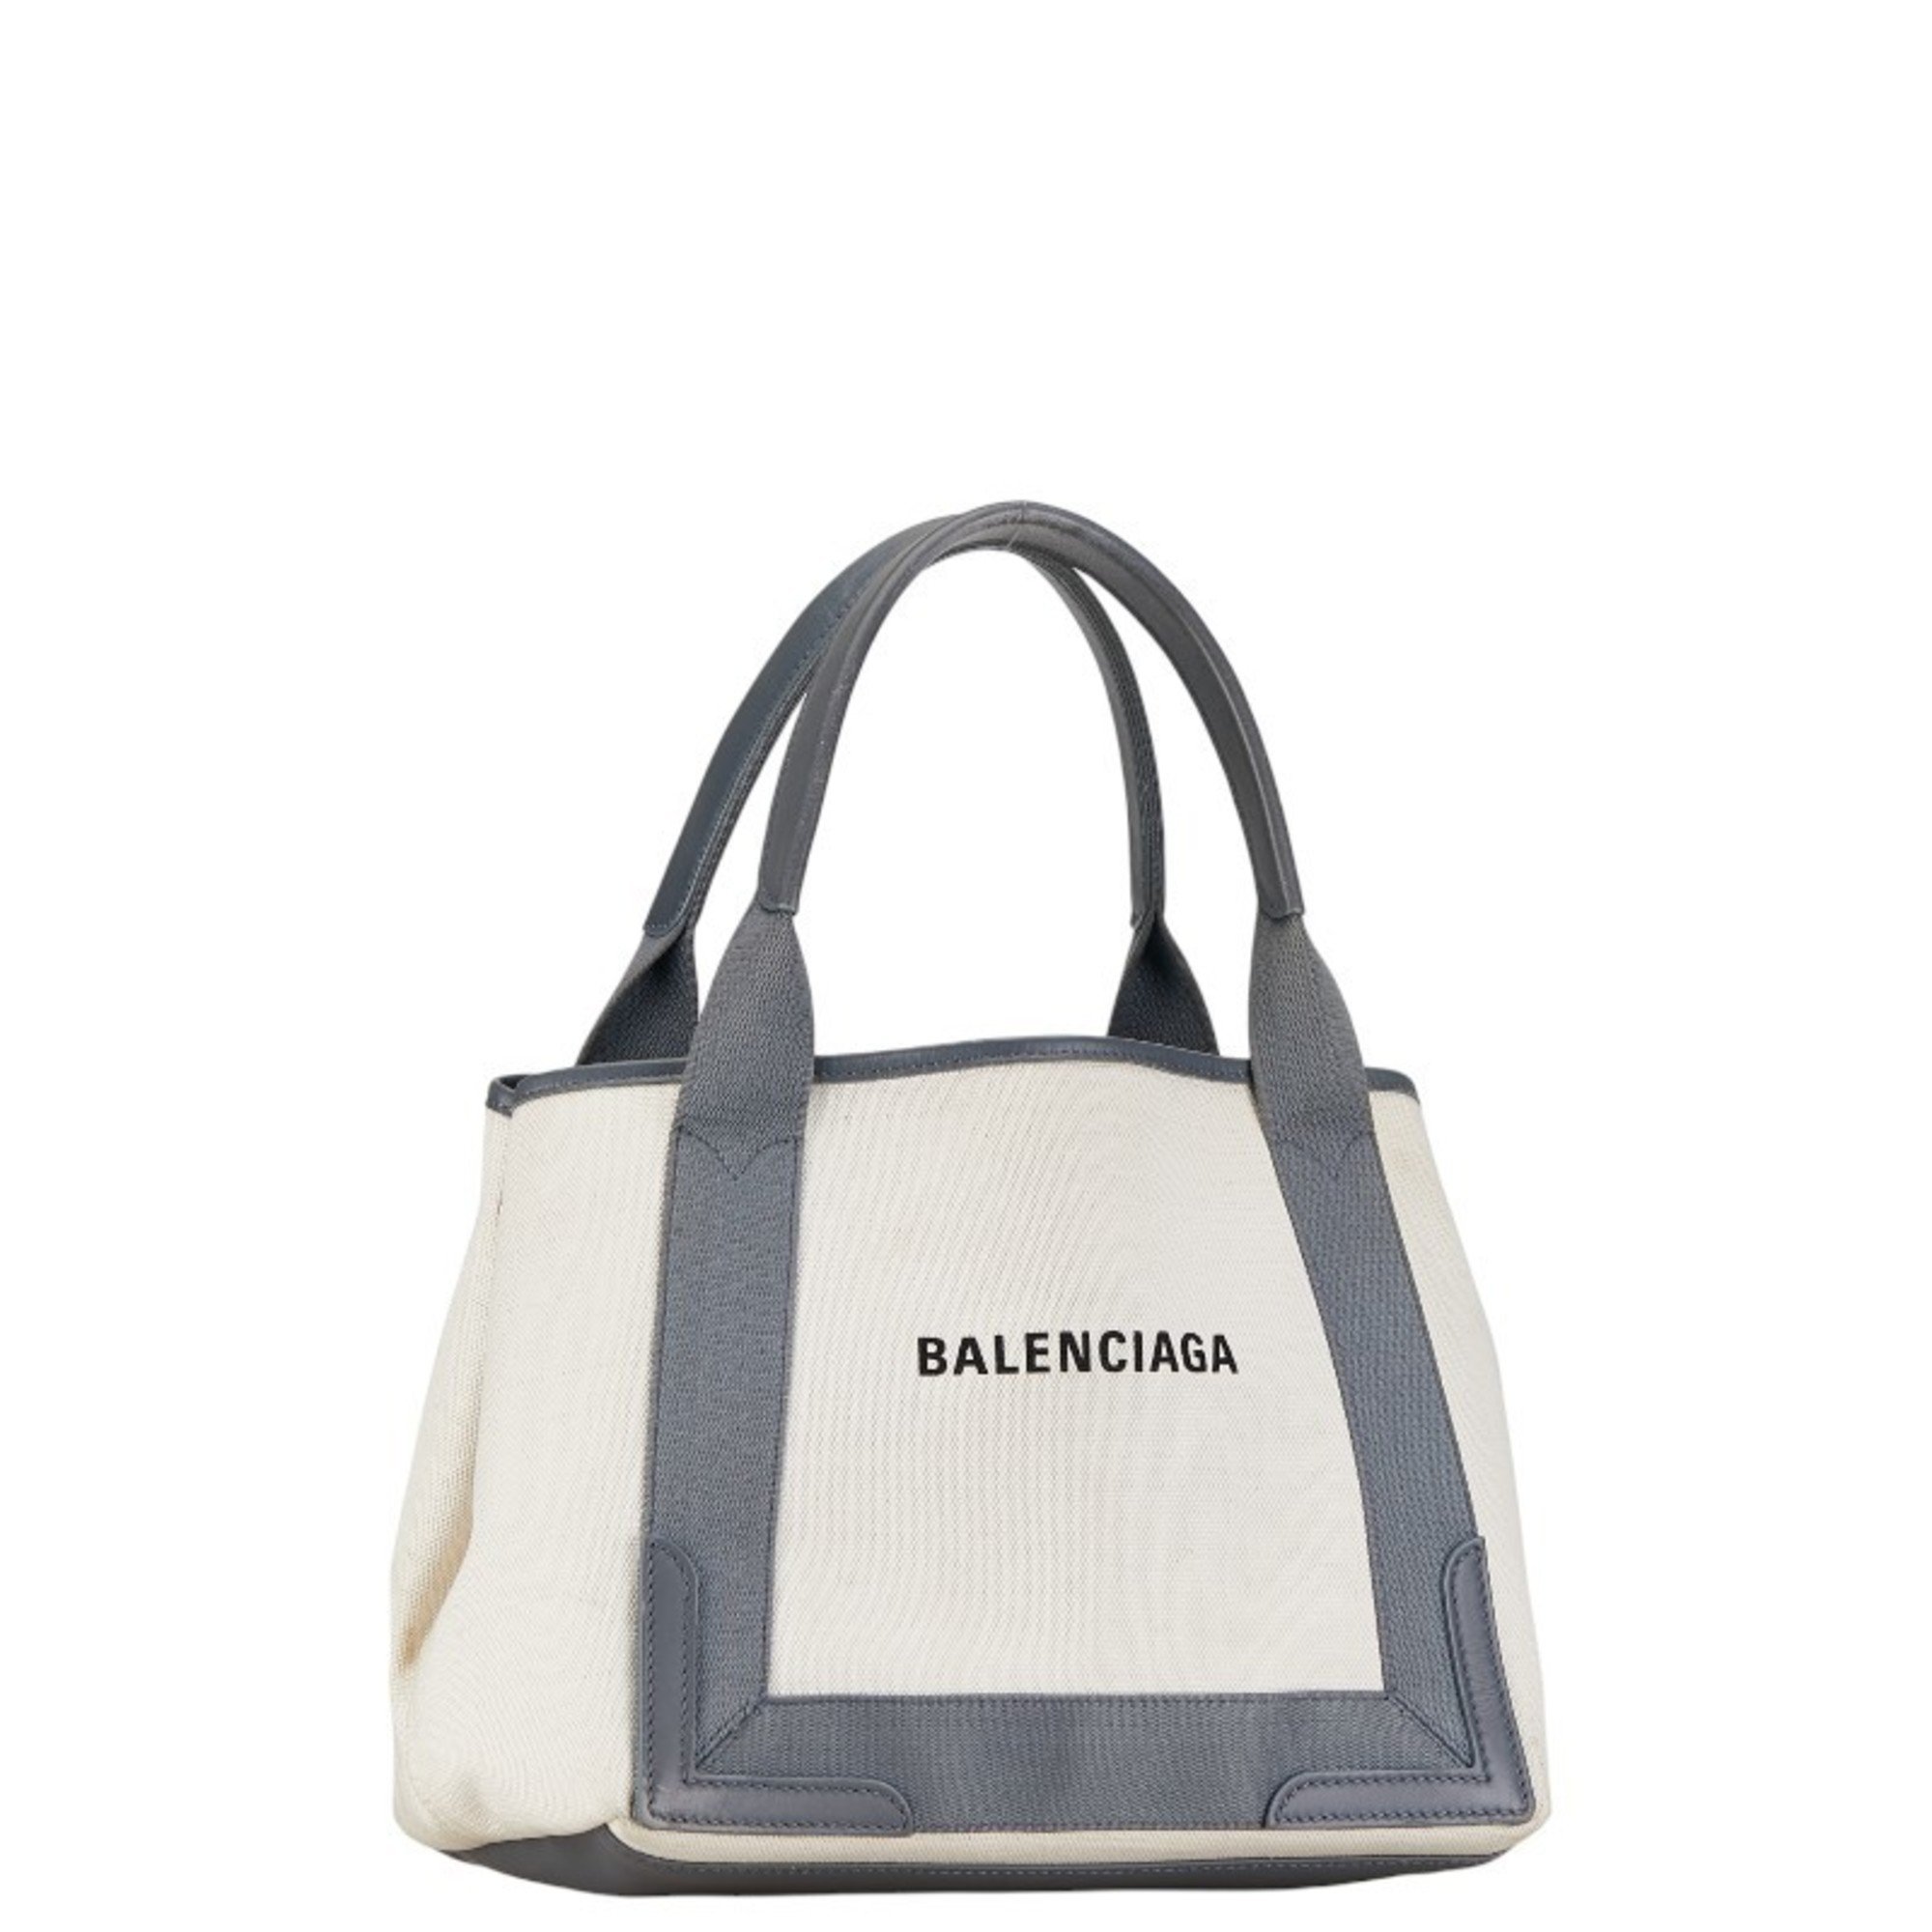 Balenciaga Navy Cabas S Tote Bag Shoulder 339933 White Grey Canvas Leather Women's BALENCIAGA